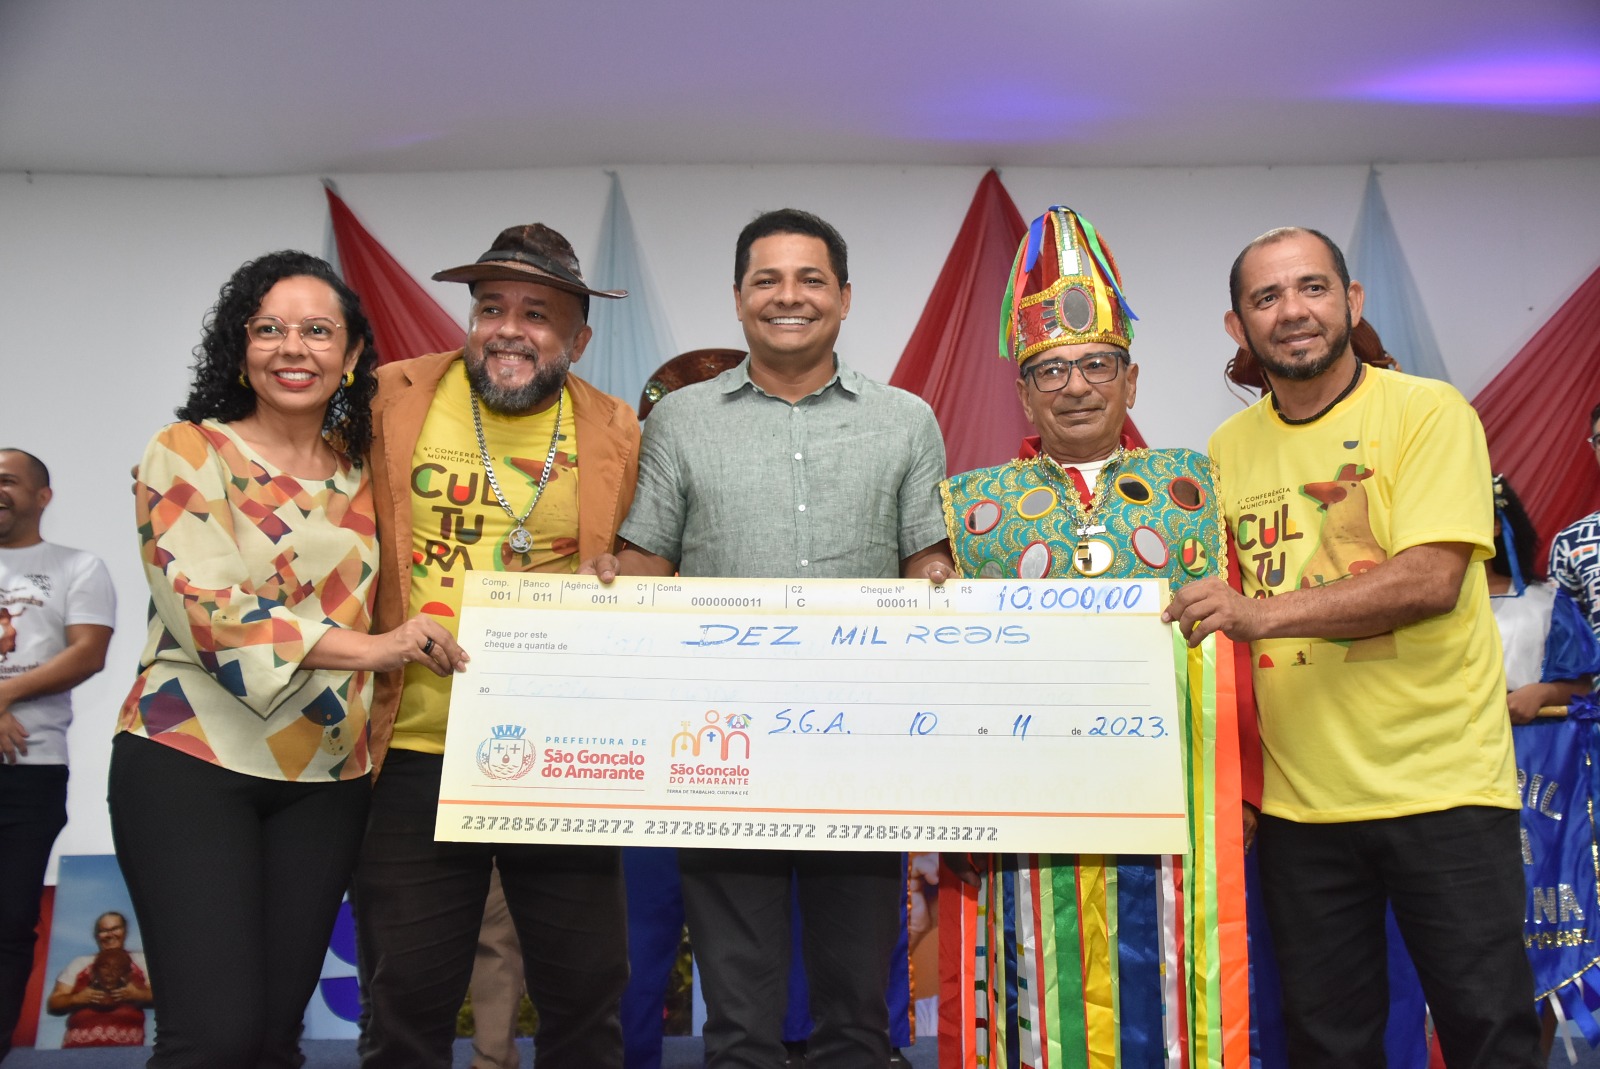 Incentivos de mais de 60 mil reais são entregues a grupos culturais de São Gonçalo do Amarante